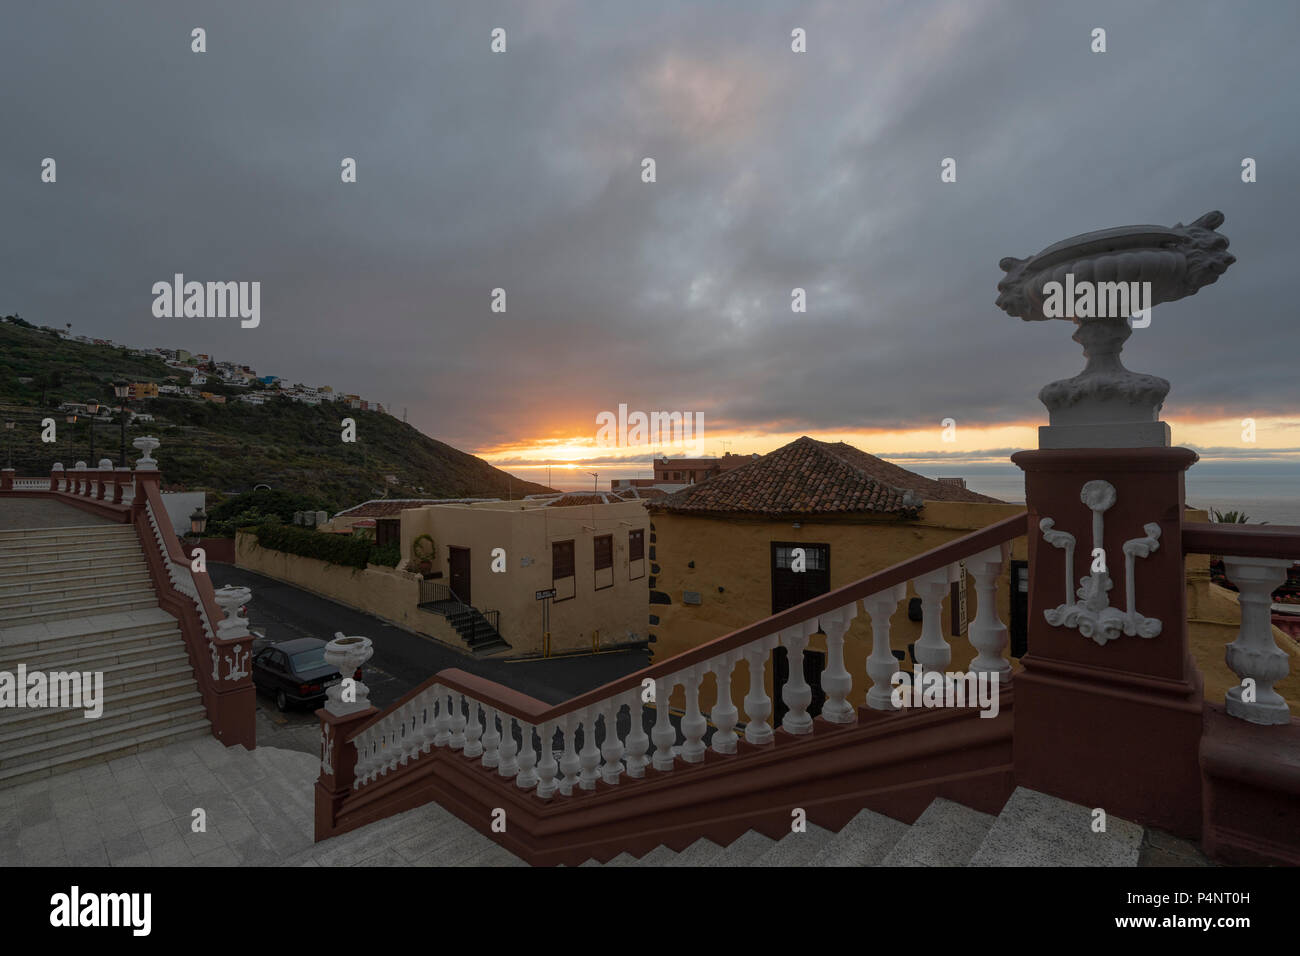 Le quartier historique de Santa Cruz de Tenerife,visité, vu et photographié au coucher du soleil Banque D'Images